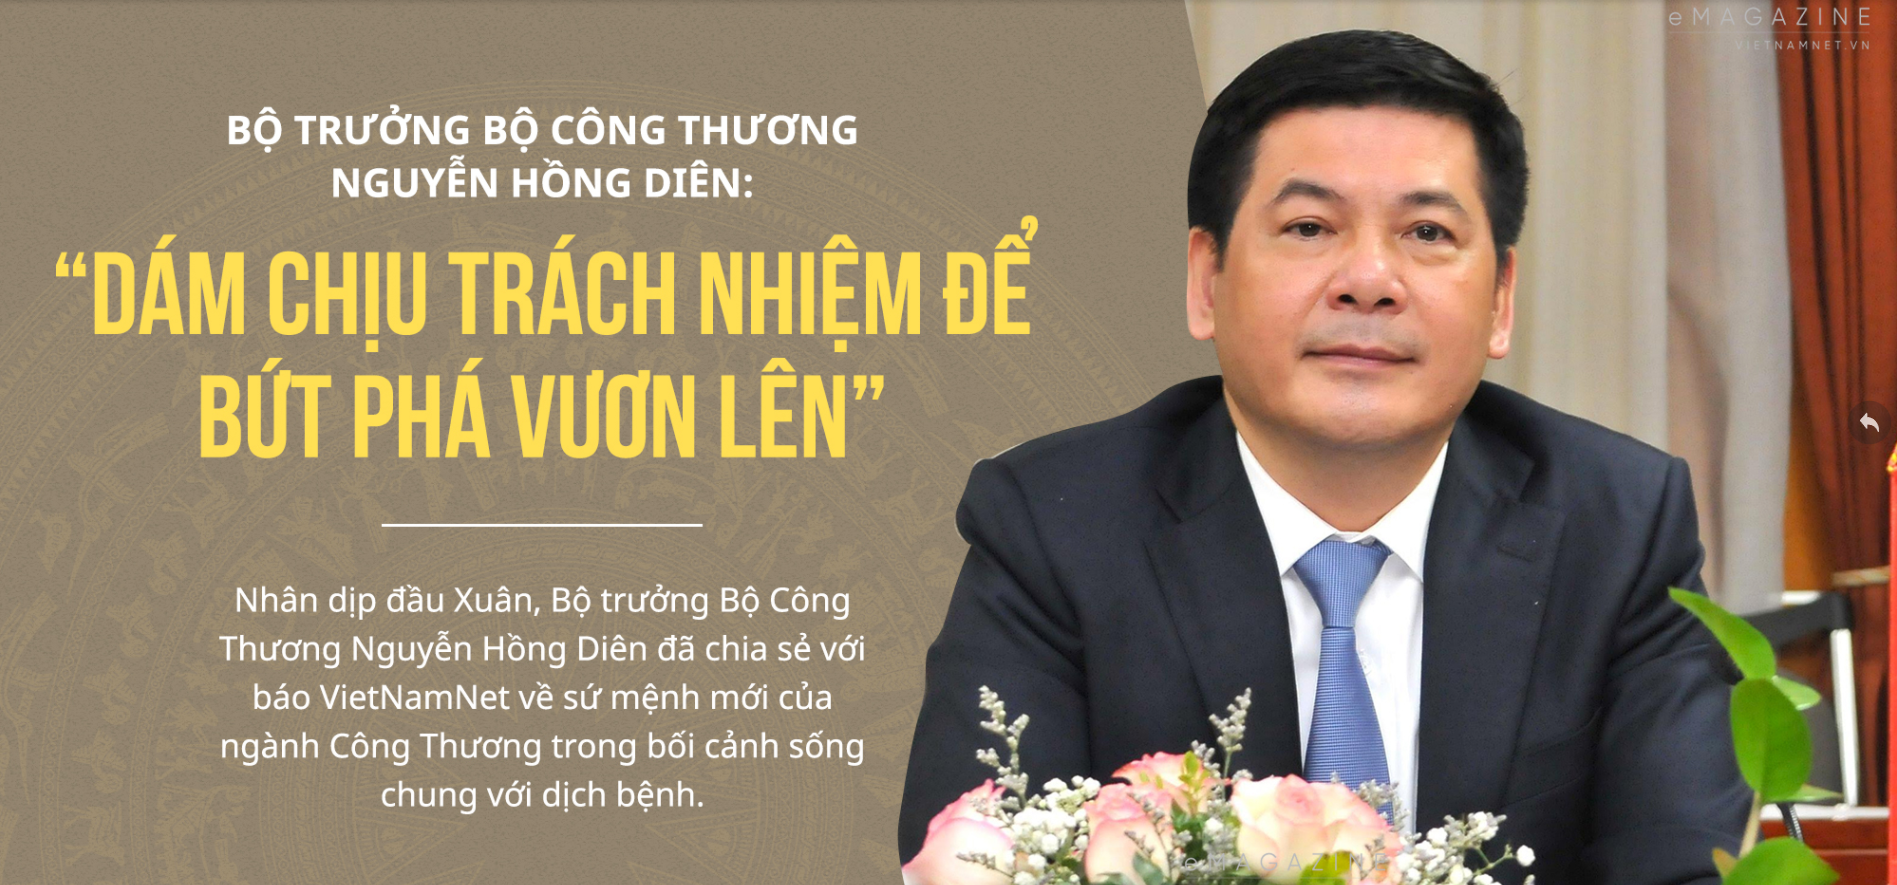 Nhân dịp đầu xuân, Bộ trưởng Bộ Công Thương Nguyễn Hồng Diên chia sẻ với báo VietNamNet về sứ mệnh của Ngành Công Thương trong bối cảnh sống chung với dịch bệnh